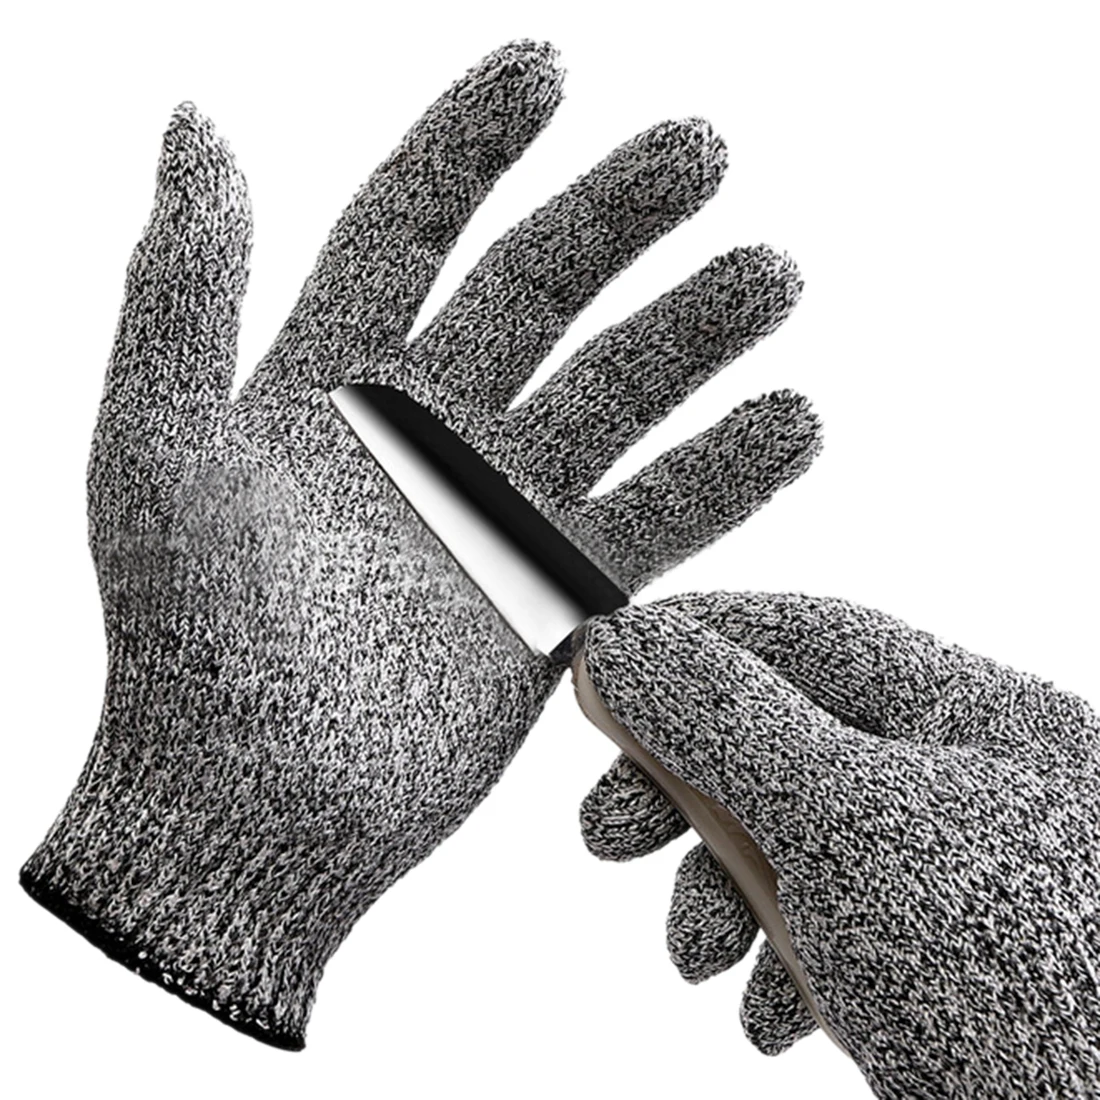 Защитные перчатки для взрослых, рабочие, мужские, вязаные, устойчивые к истиранию, цепная пила, уровень 5, защитные специальные инструменты, бытовые перчатки